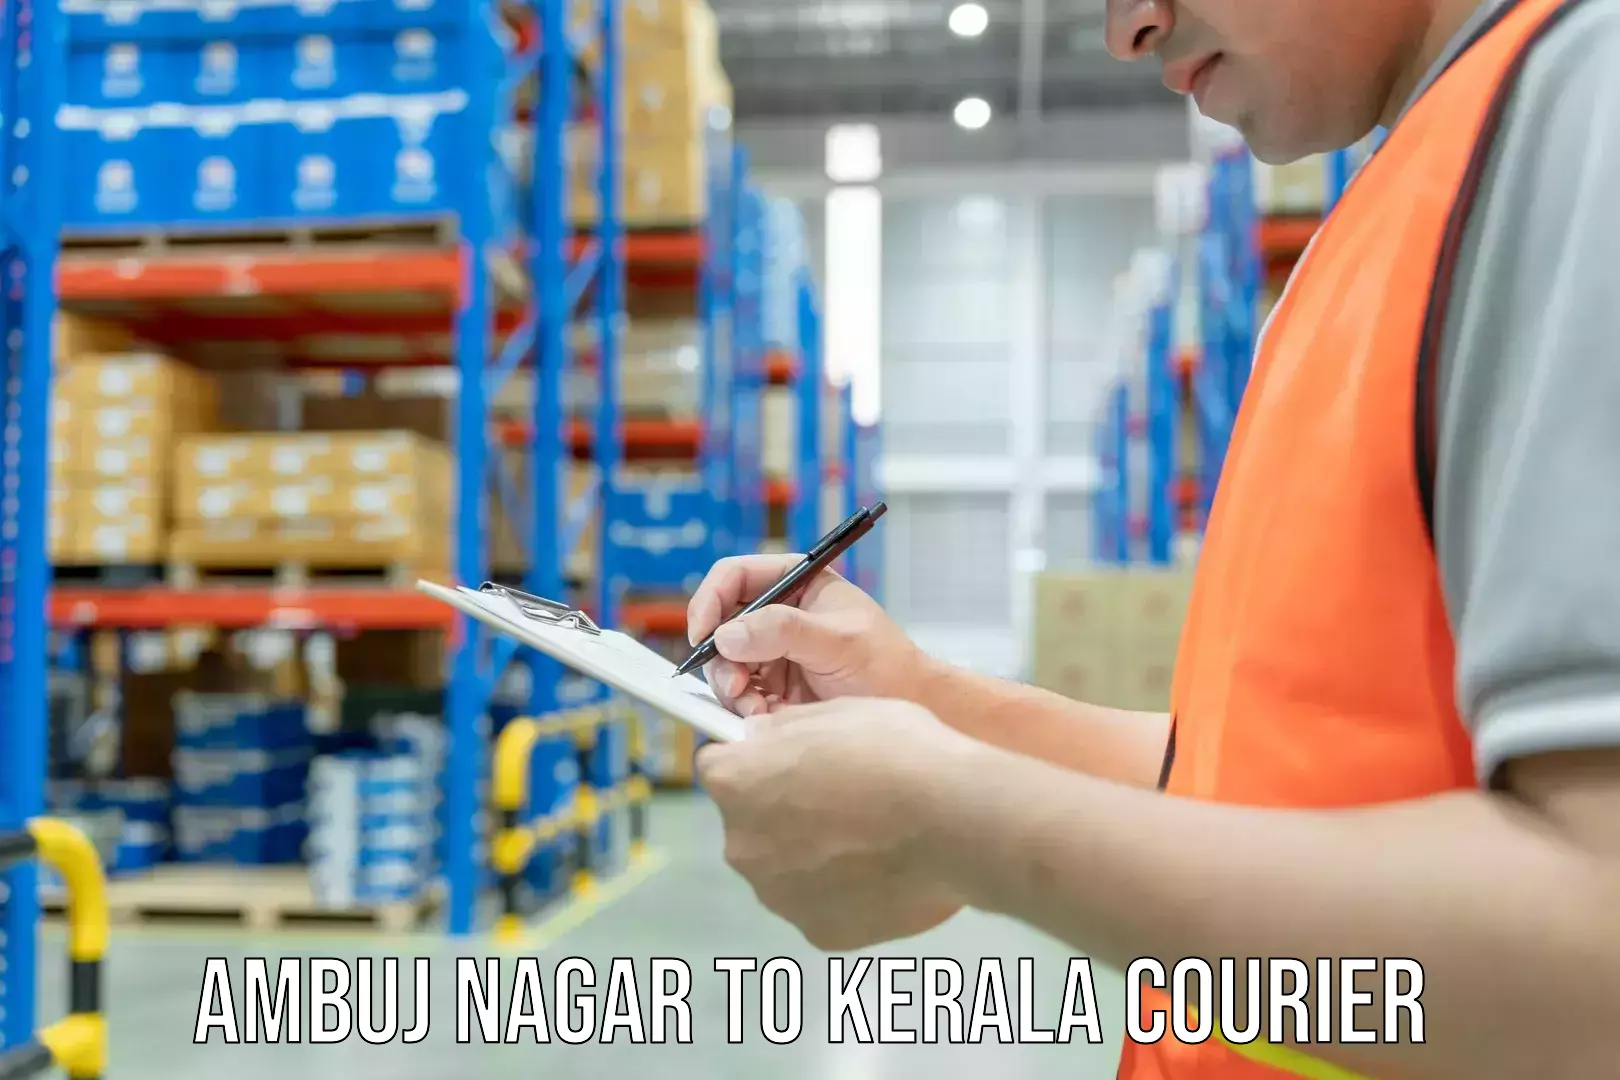 Efficient order fulfillment Ambuj Nagar to Kerala